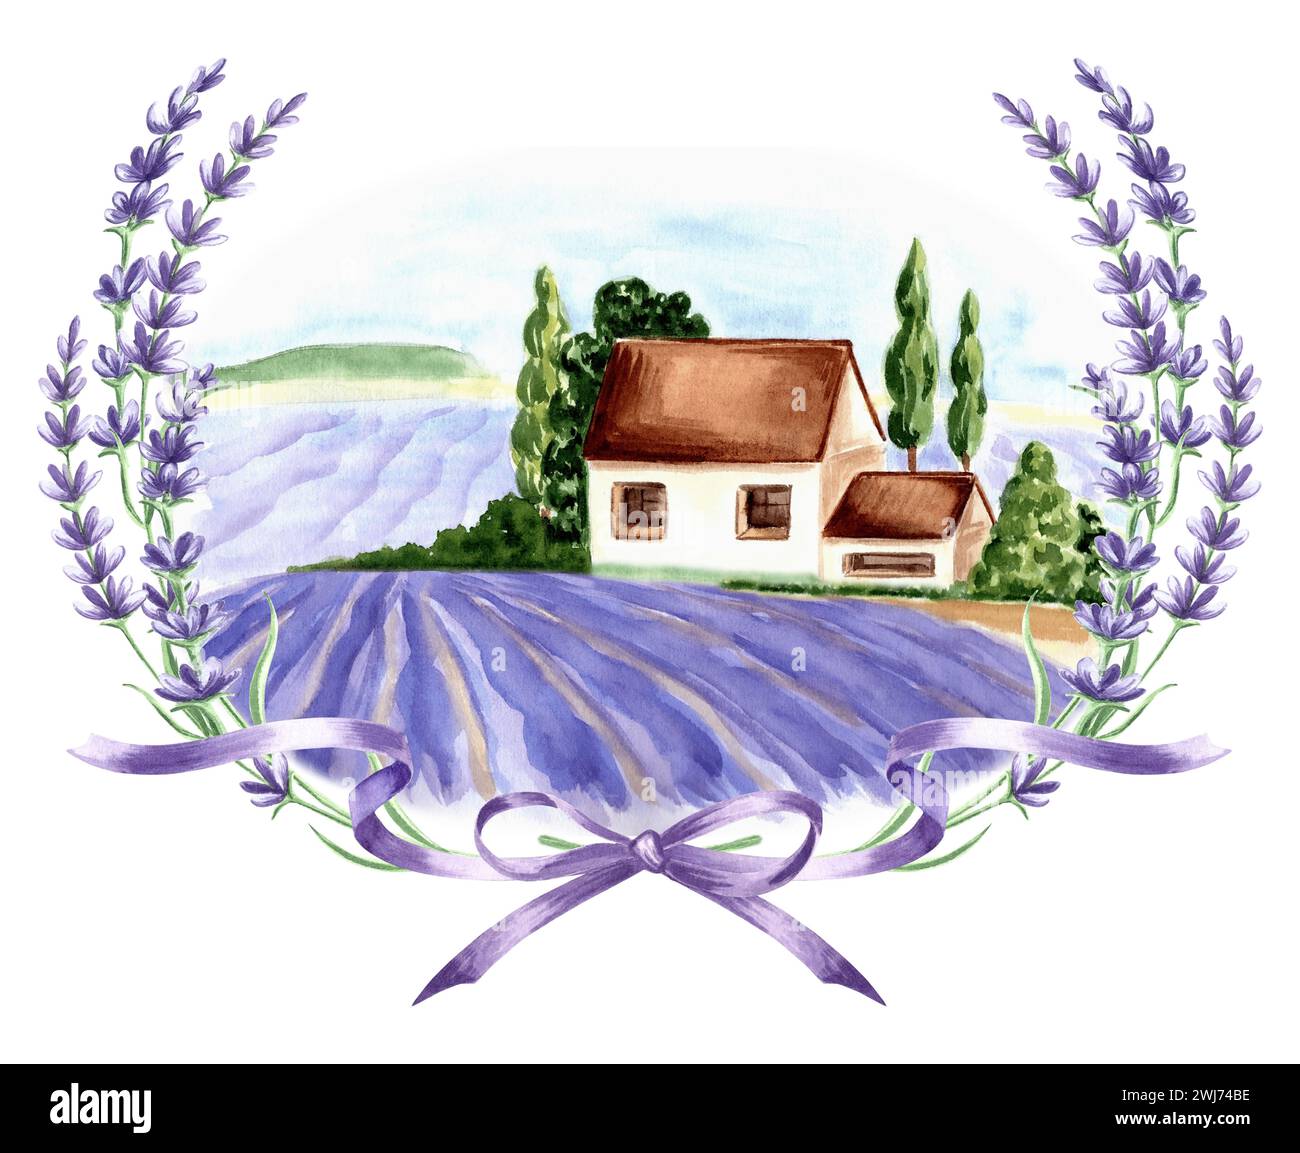 Champs violets lavande. Paysage d'été Provence dans le cadre délicat rond de fleurs de lavande violette avec arc et rubans. modèle isolé dessiné à la main Banque D'Images